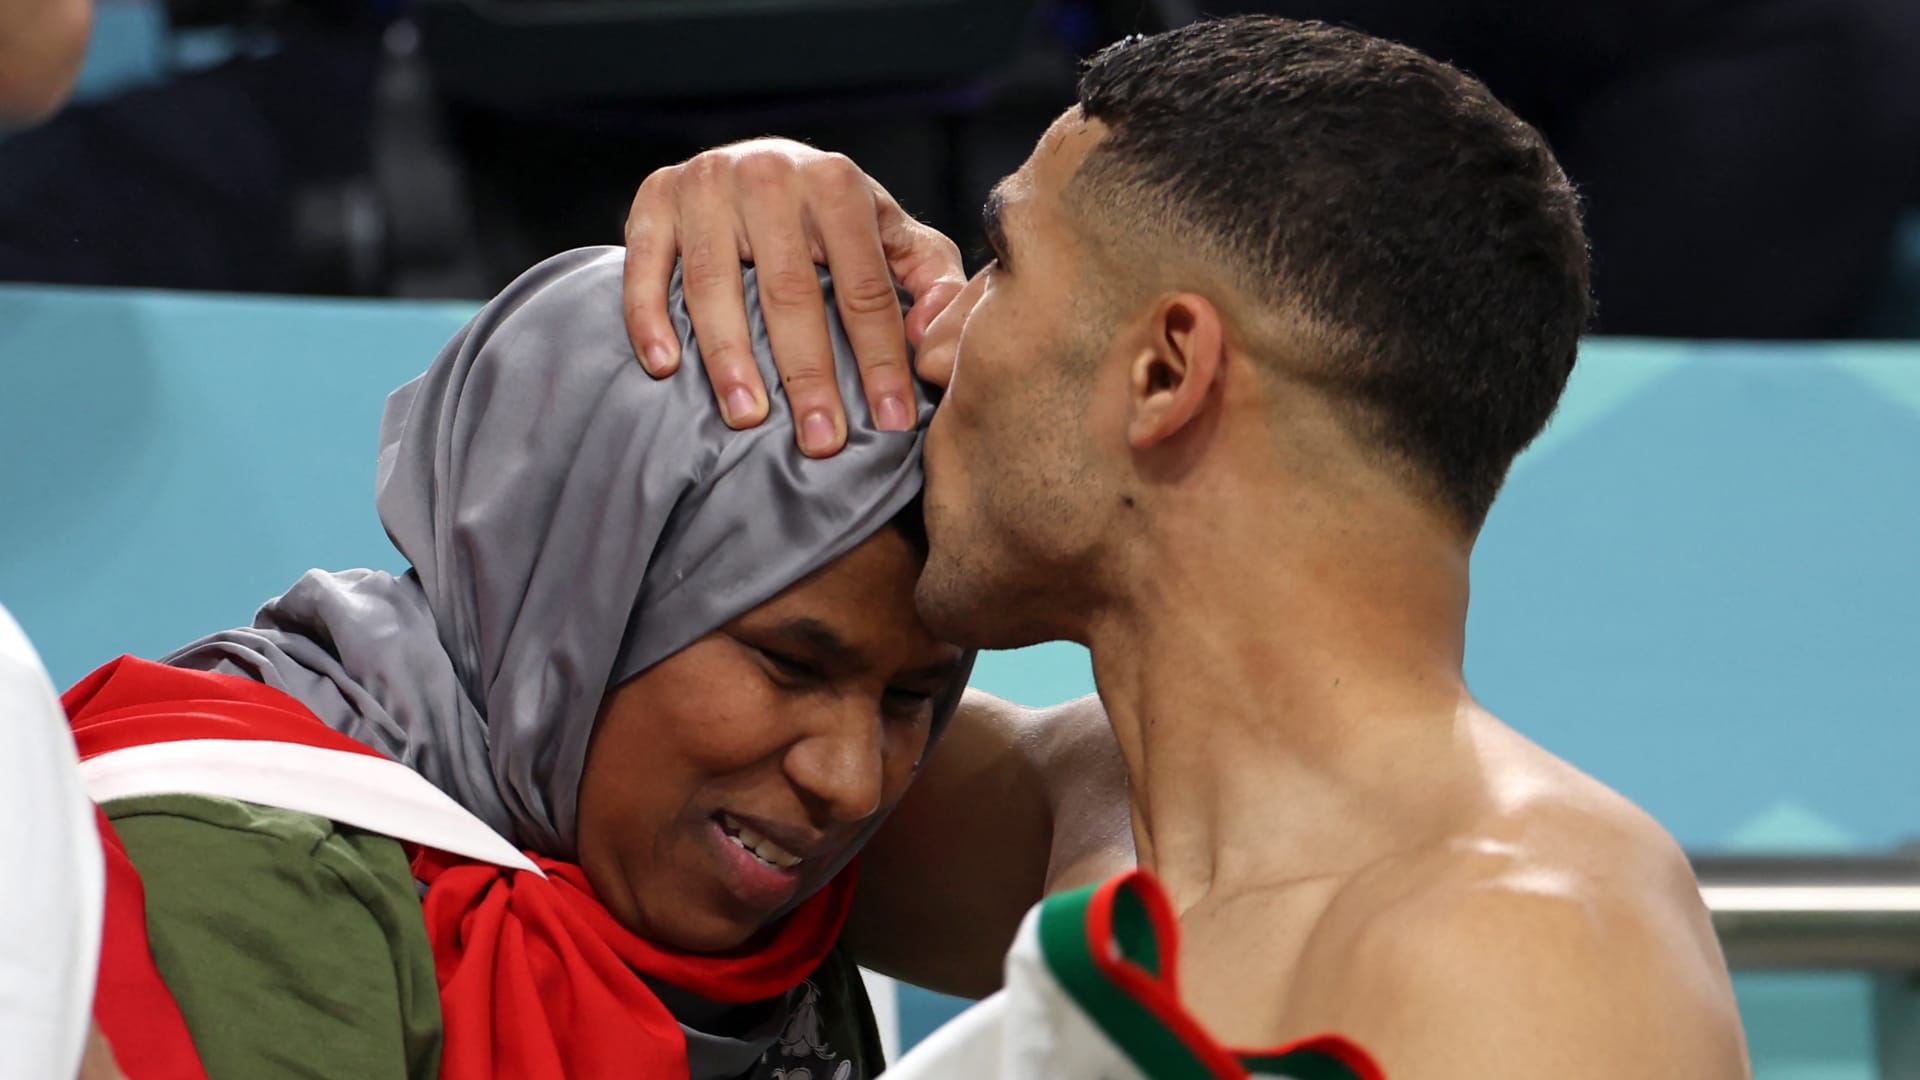 قبلة أشرف حكيمي لوالدته تخطف الأنظار بعد فوز المغرب على بلجيكا